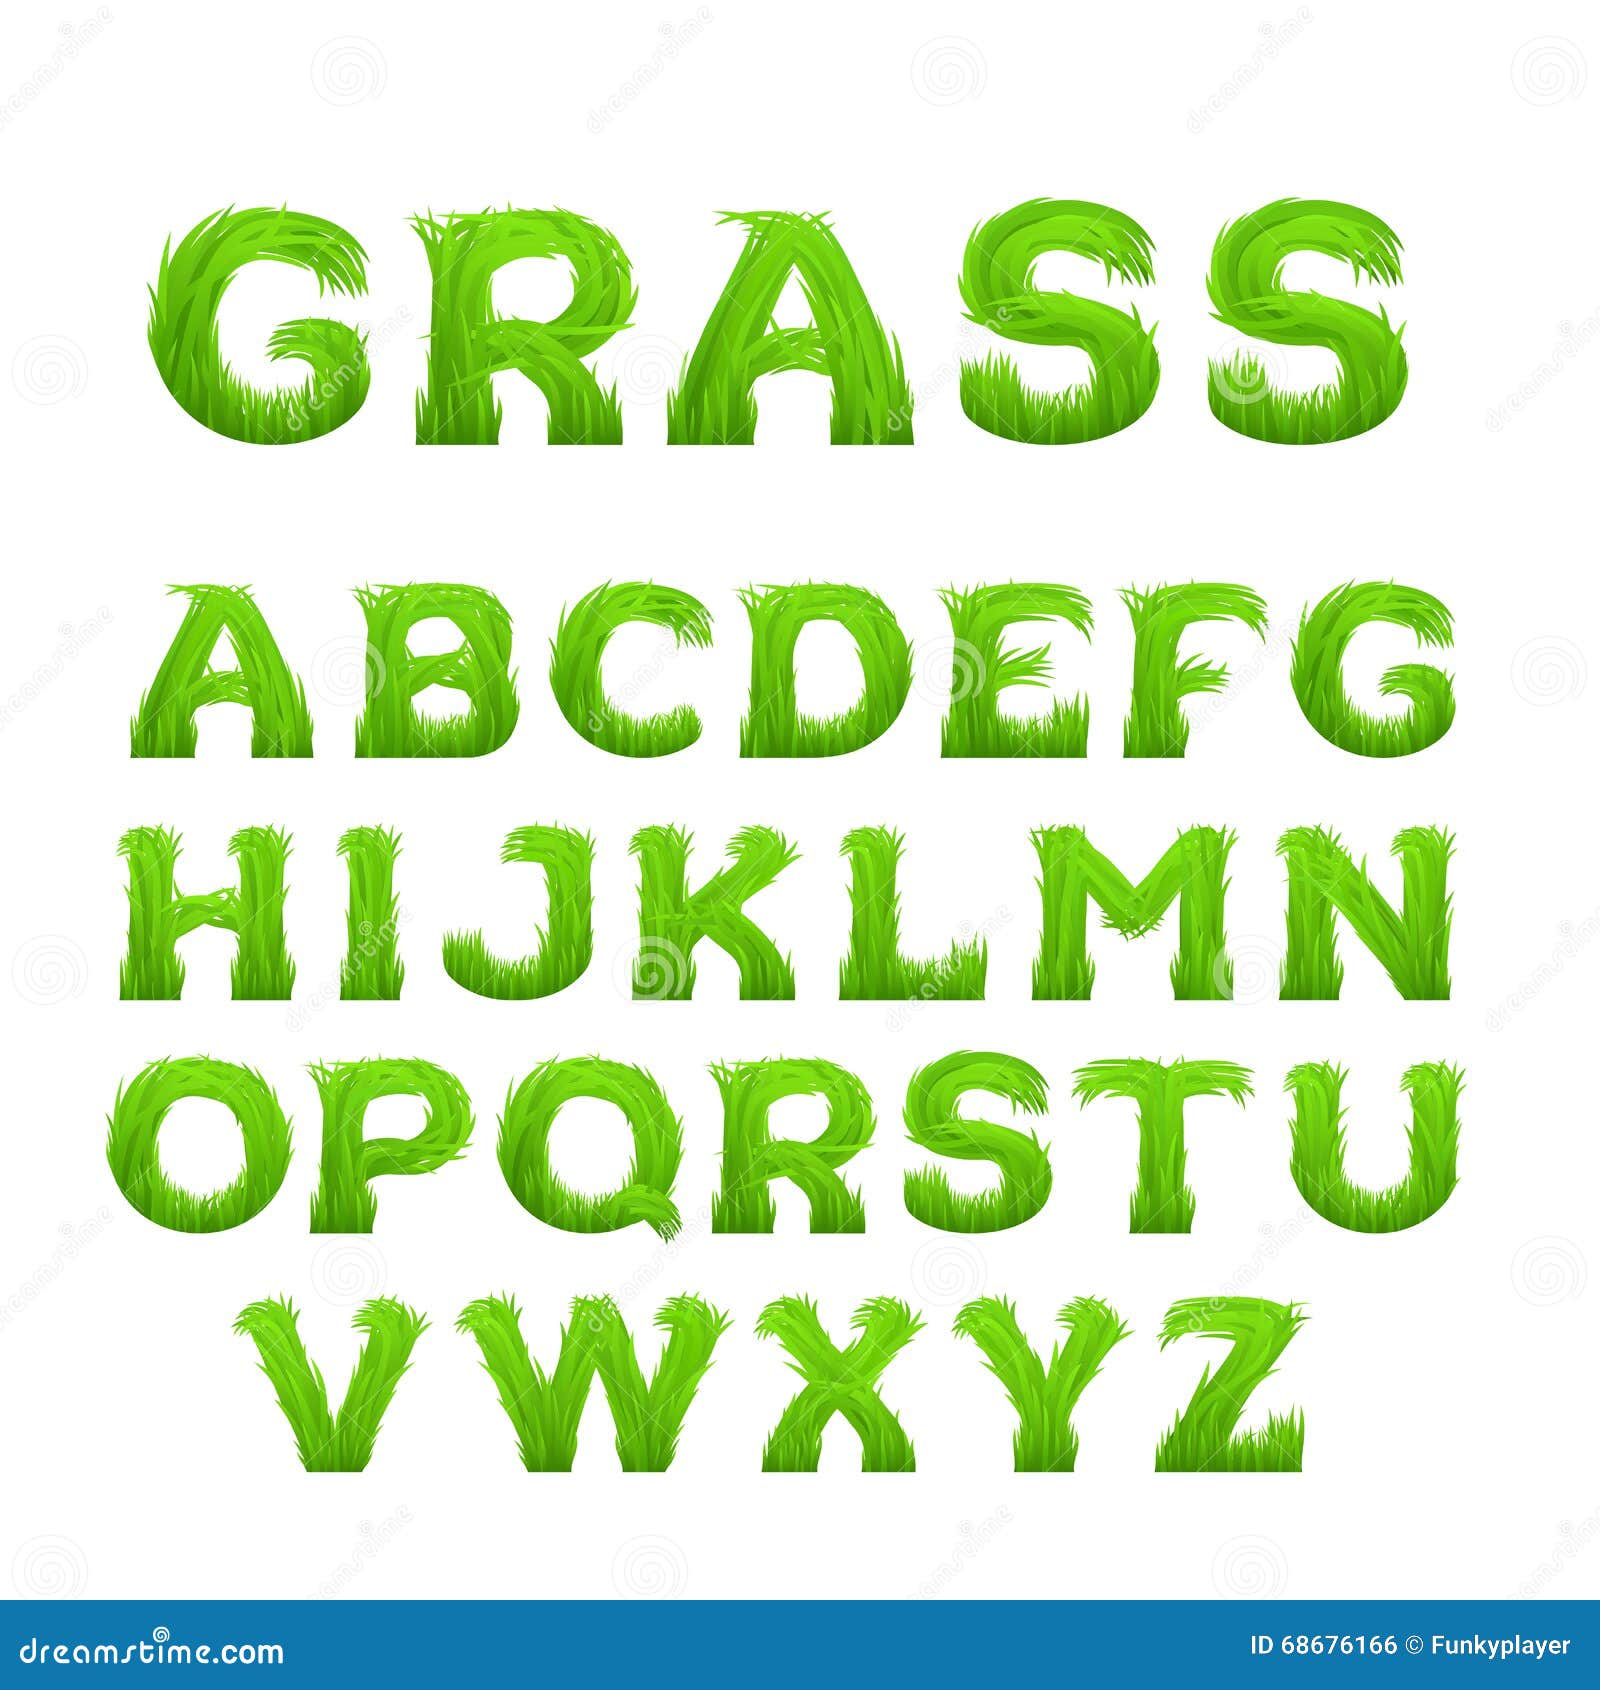 Шрифт на зеленом фоне. Зеленый шрифт. Шрифт трава. Эко шрифт. Ярко зеленый шрифт.